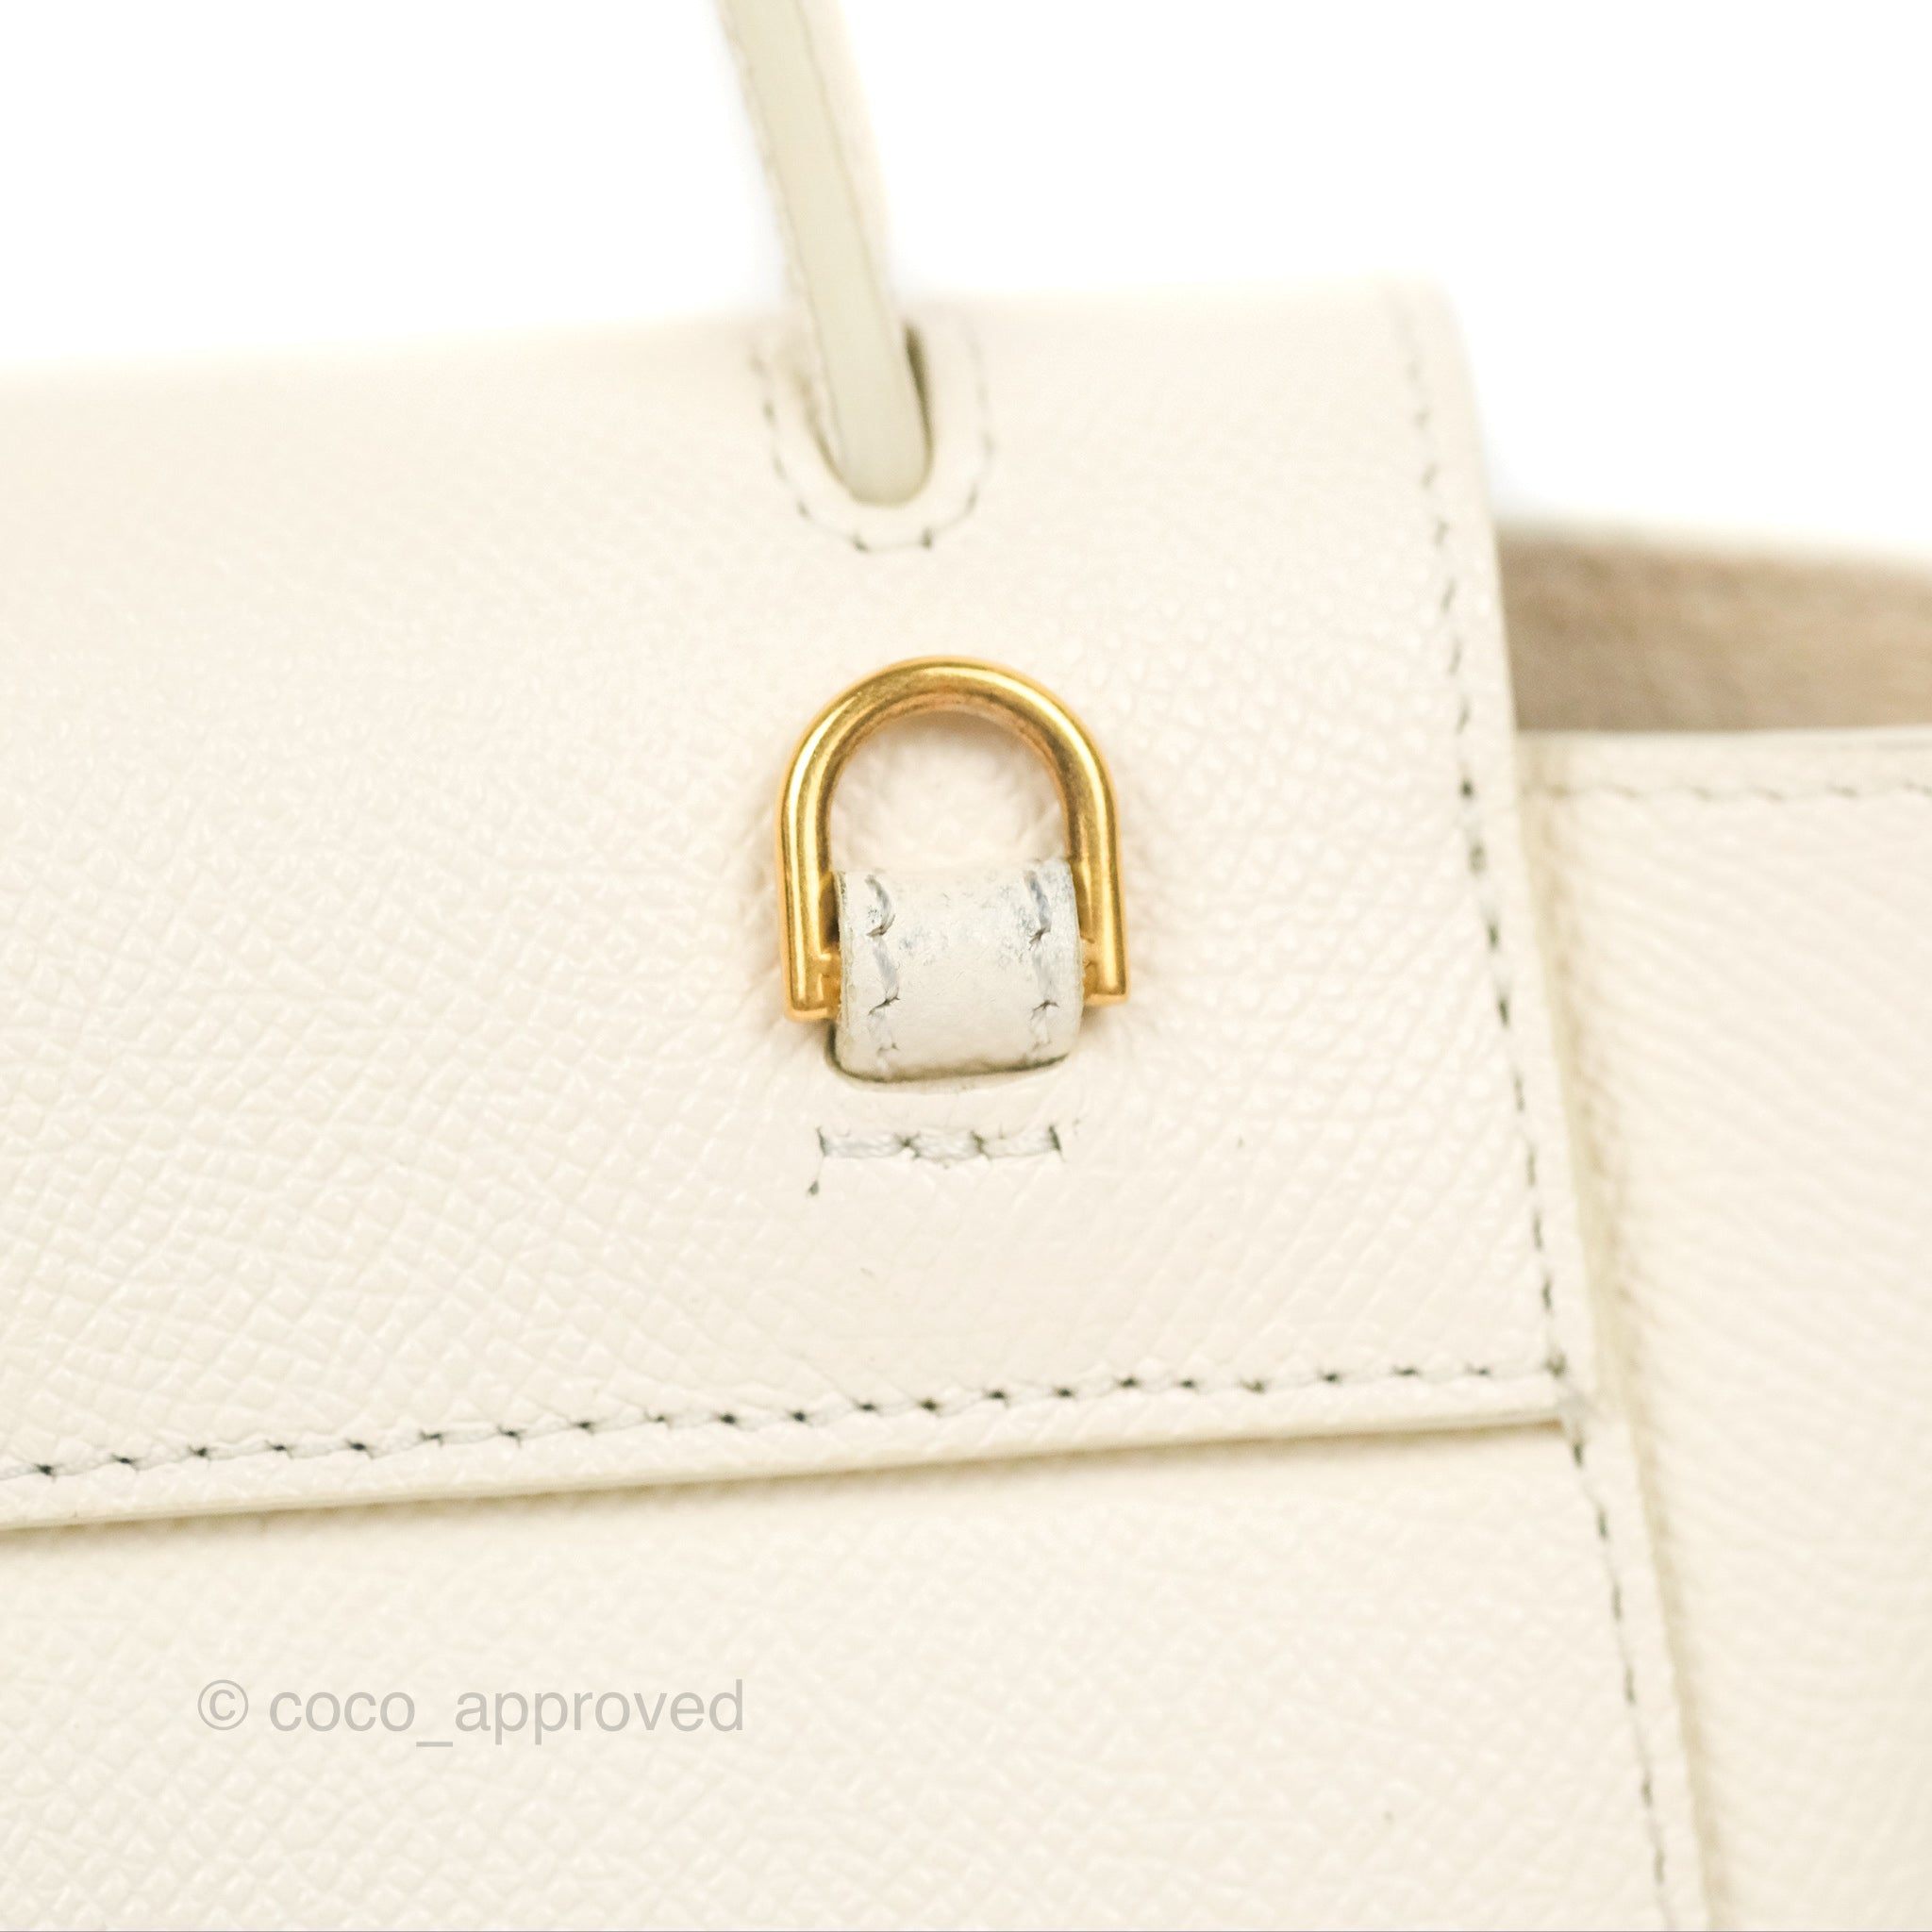 Celine Pico Belt Bag White Grained Calfskin Gold Hardware